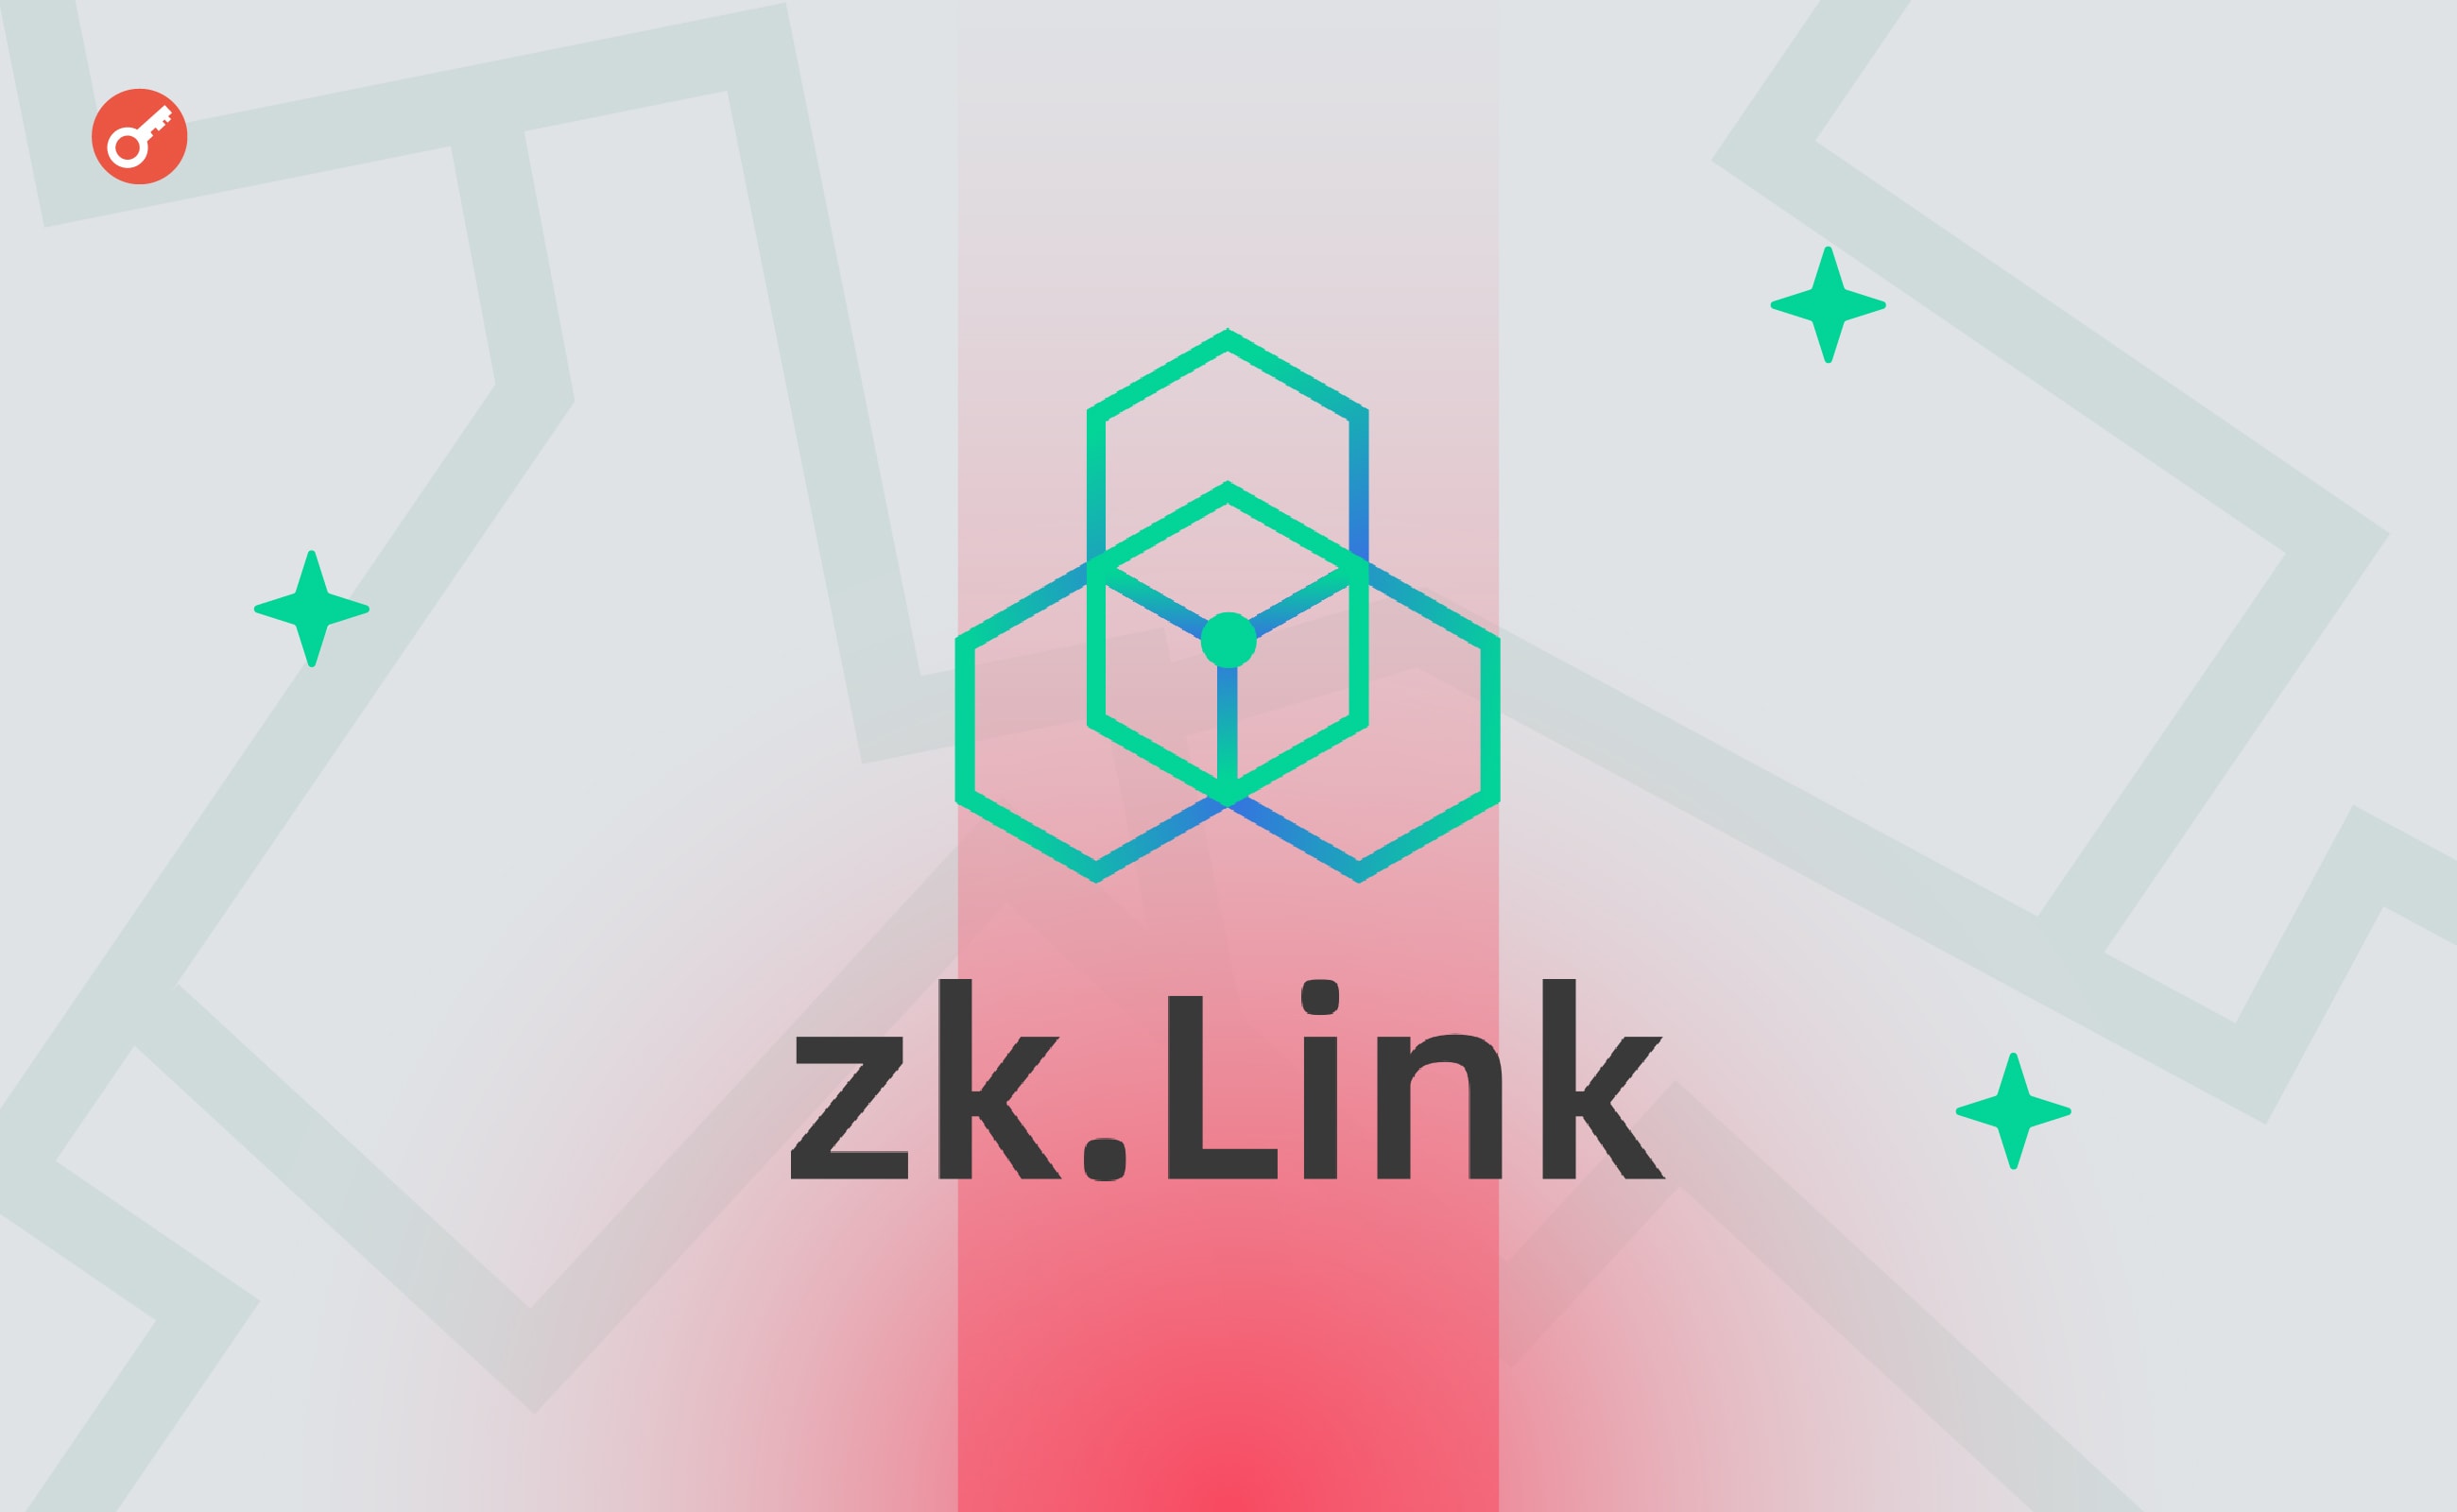 zkLink объявила о запуске публичного мейннета Nova. Заглавный коллаж новости.